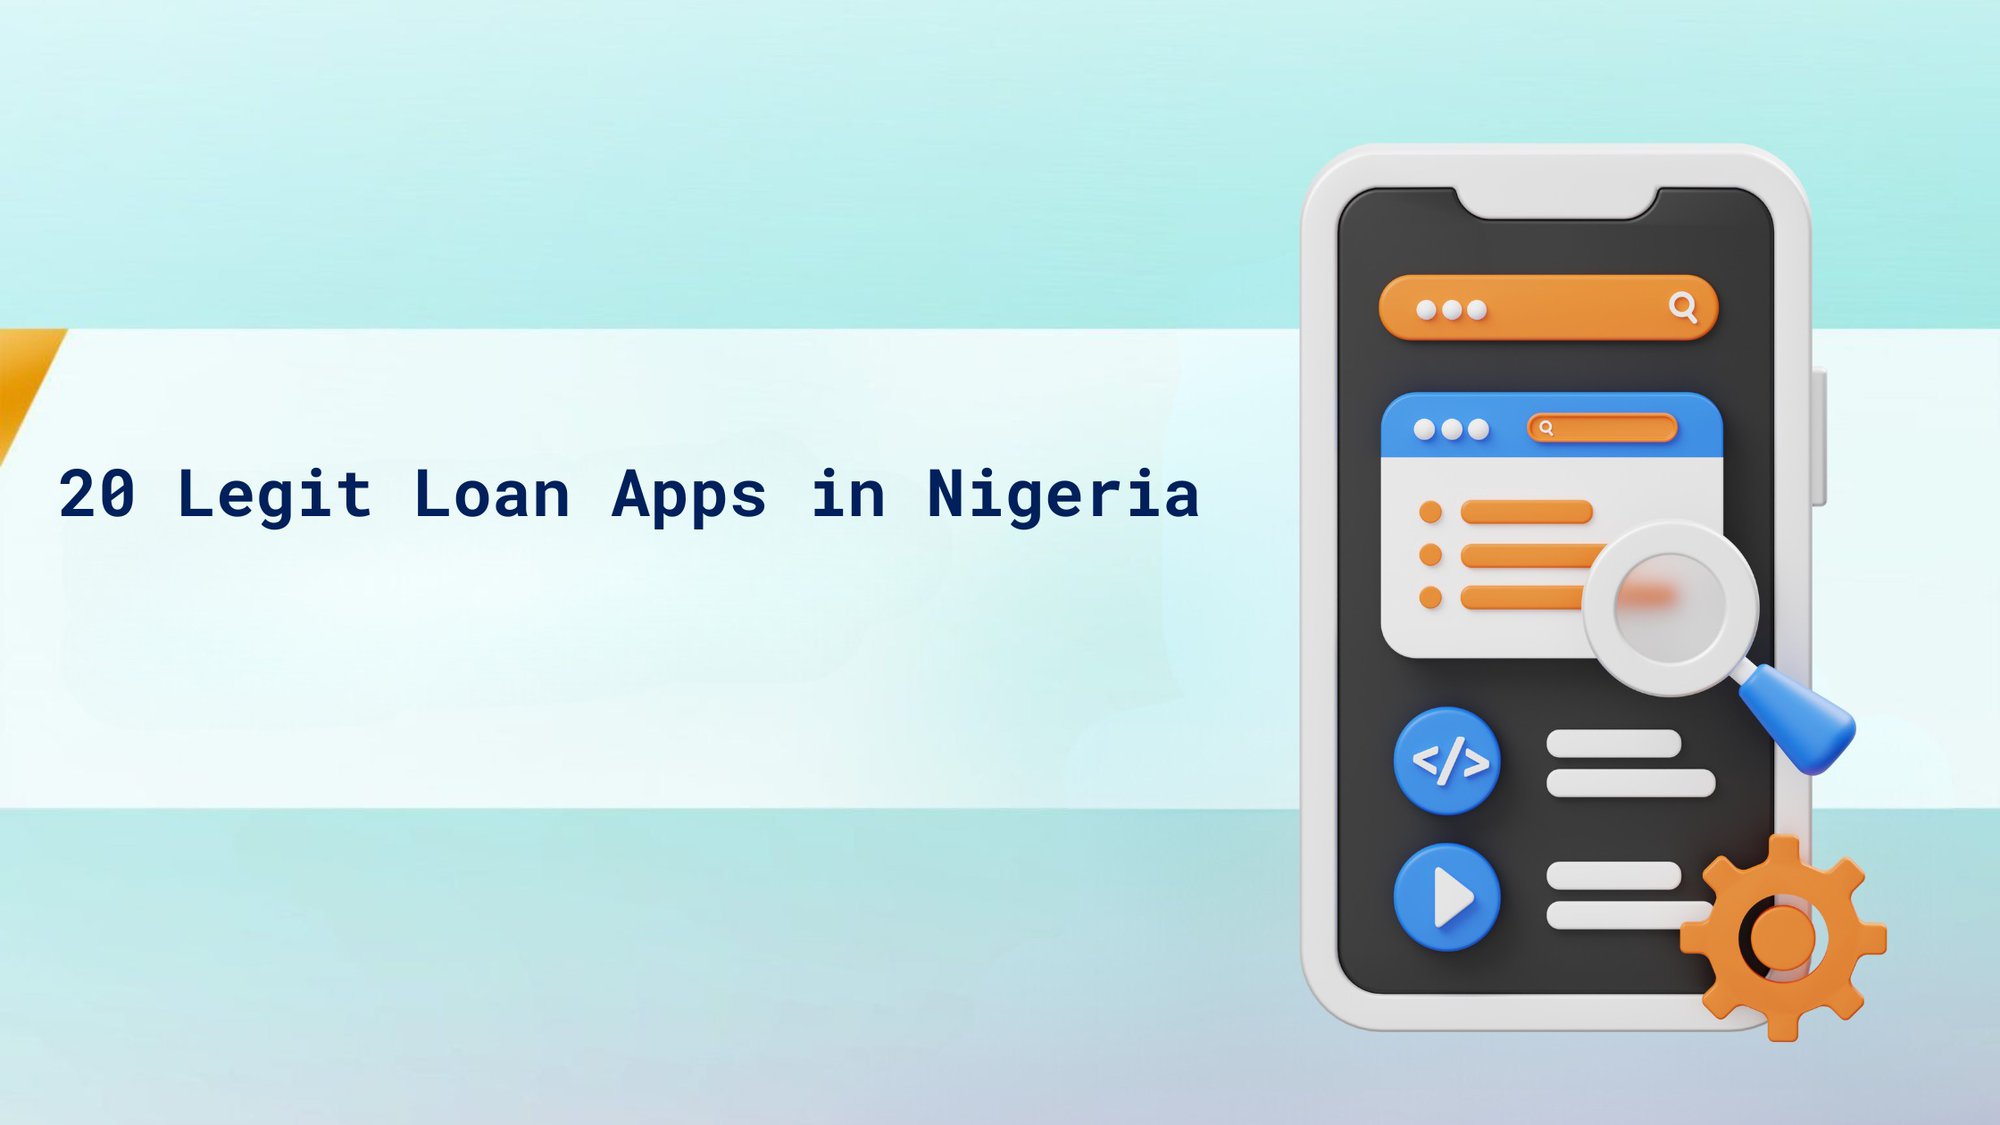 20 Legit Loan Apps in Nigeria cover